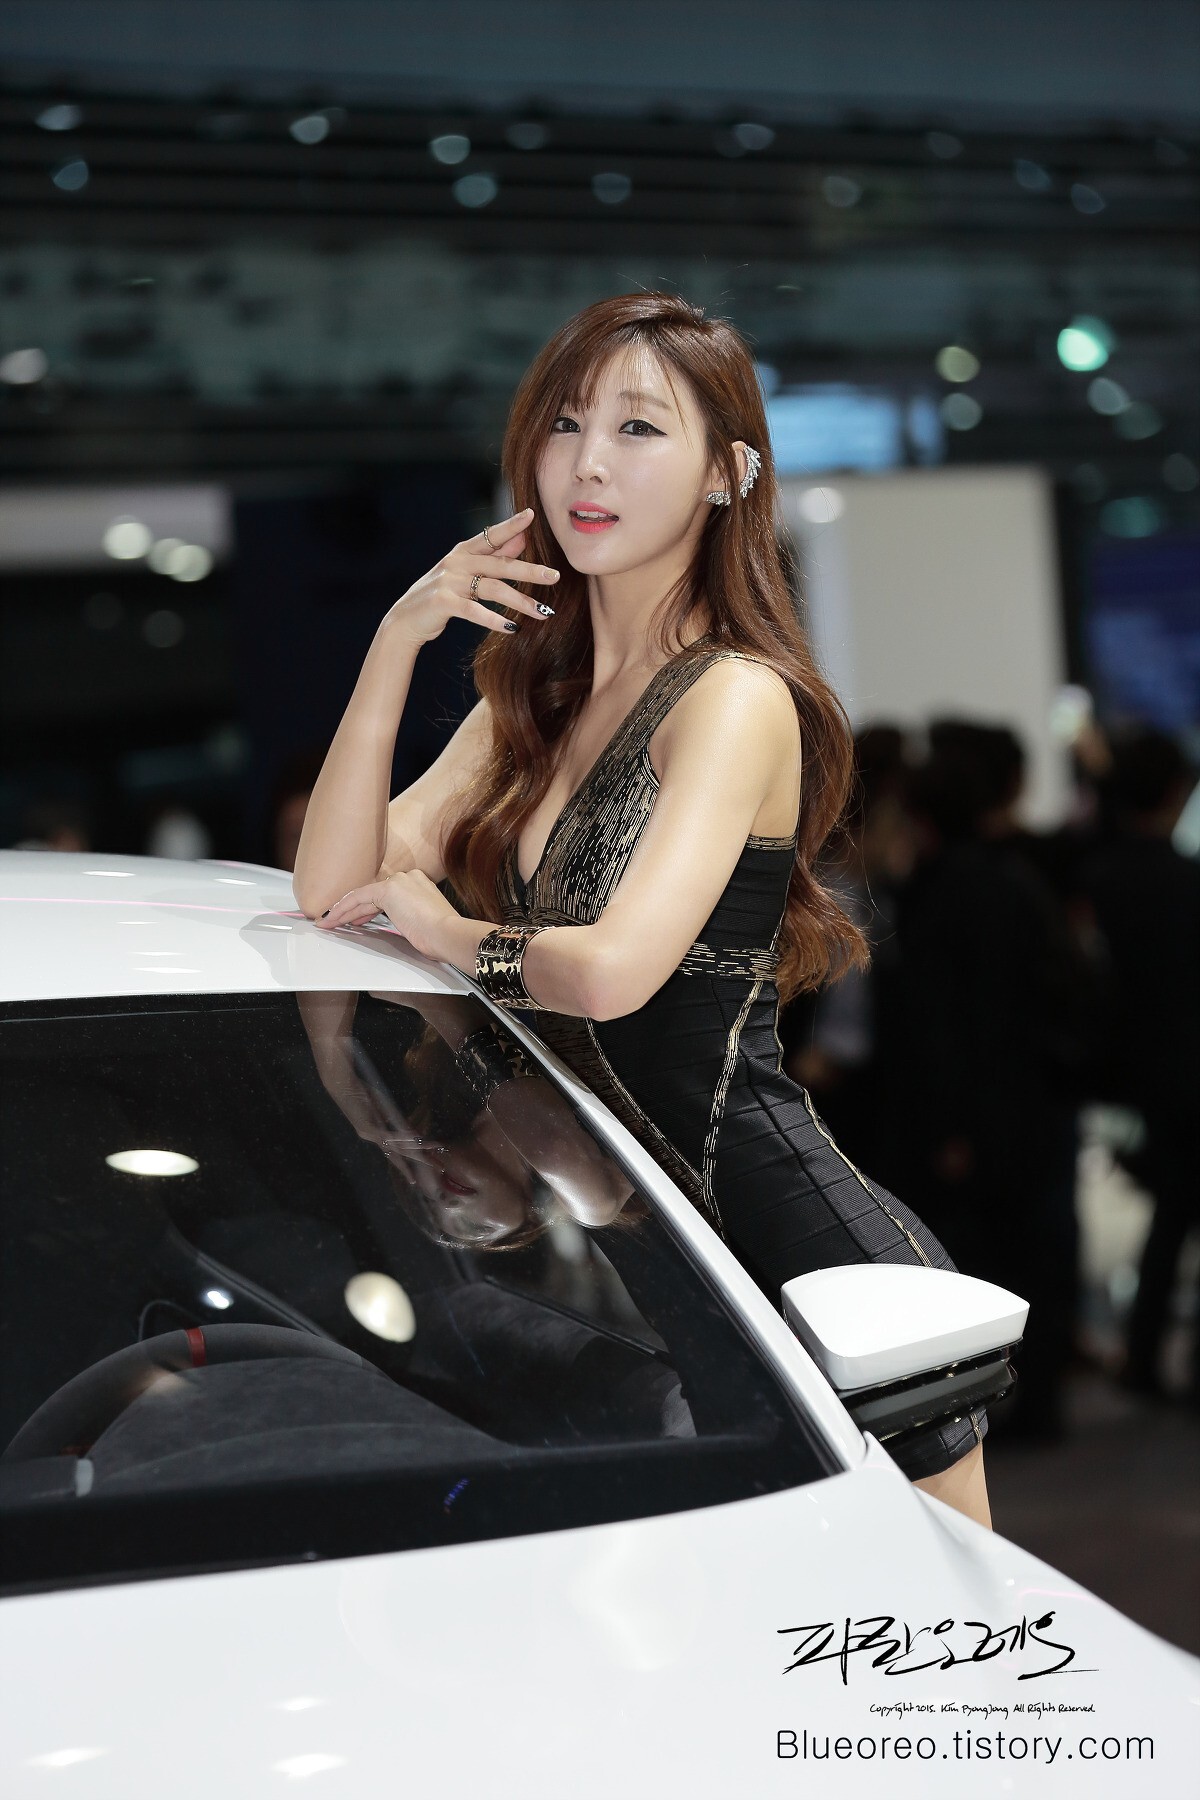 2015韩国国际车展超级车模李柳恩